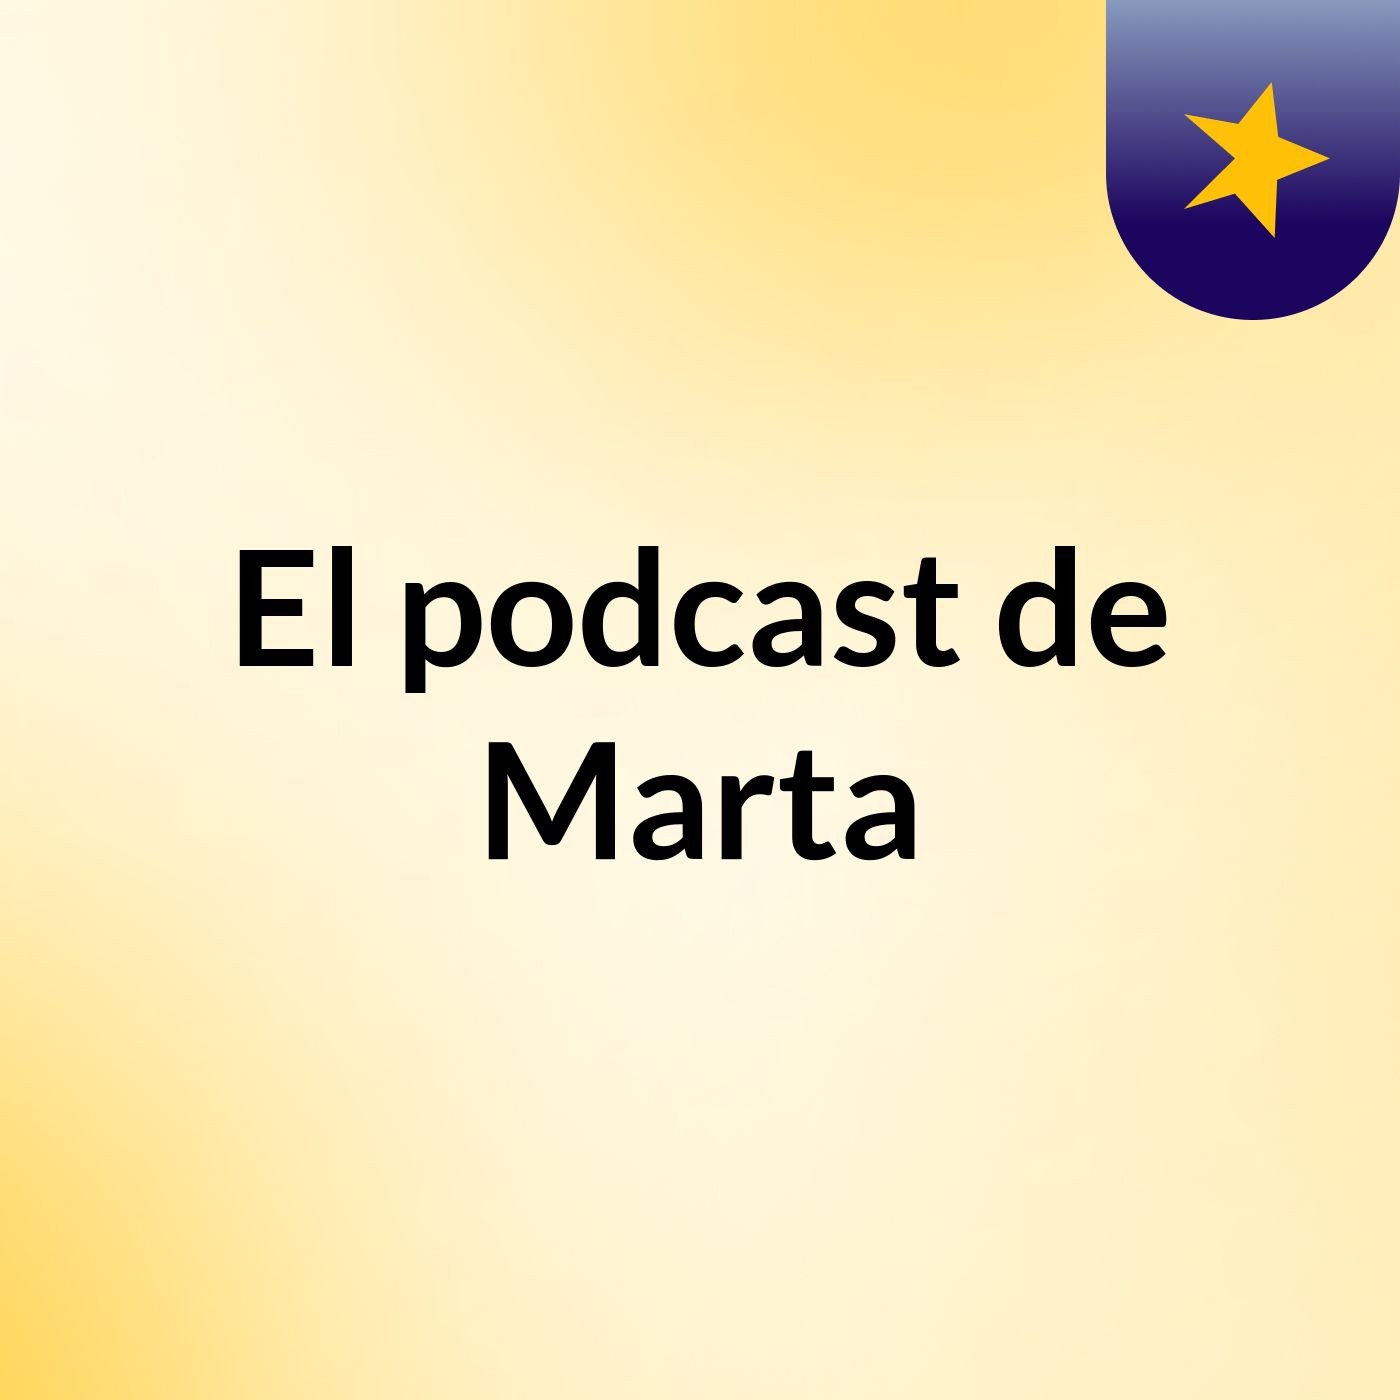 El podcast de Marta